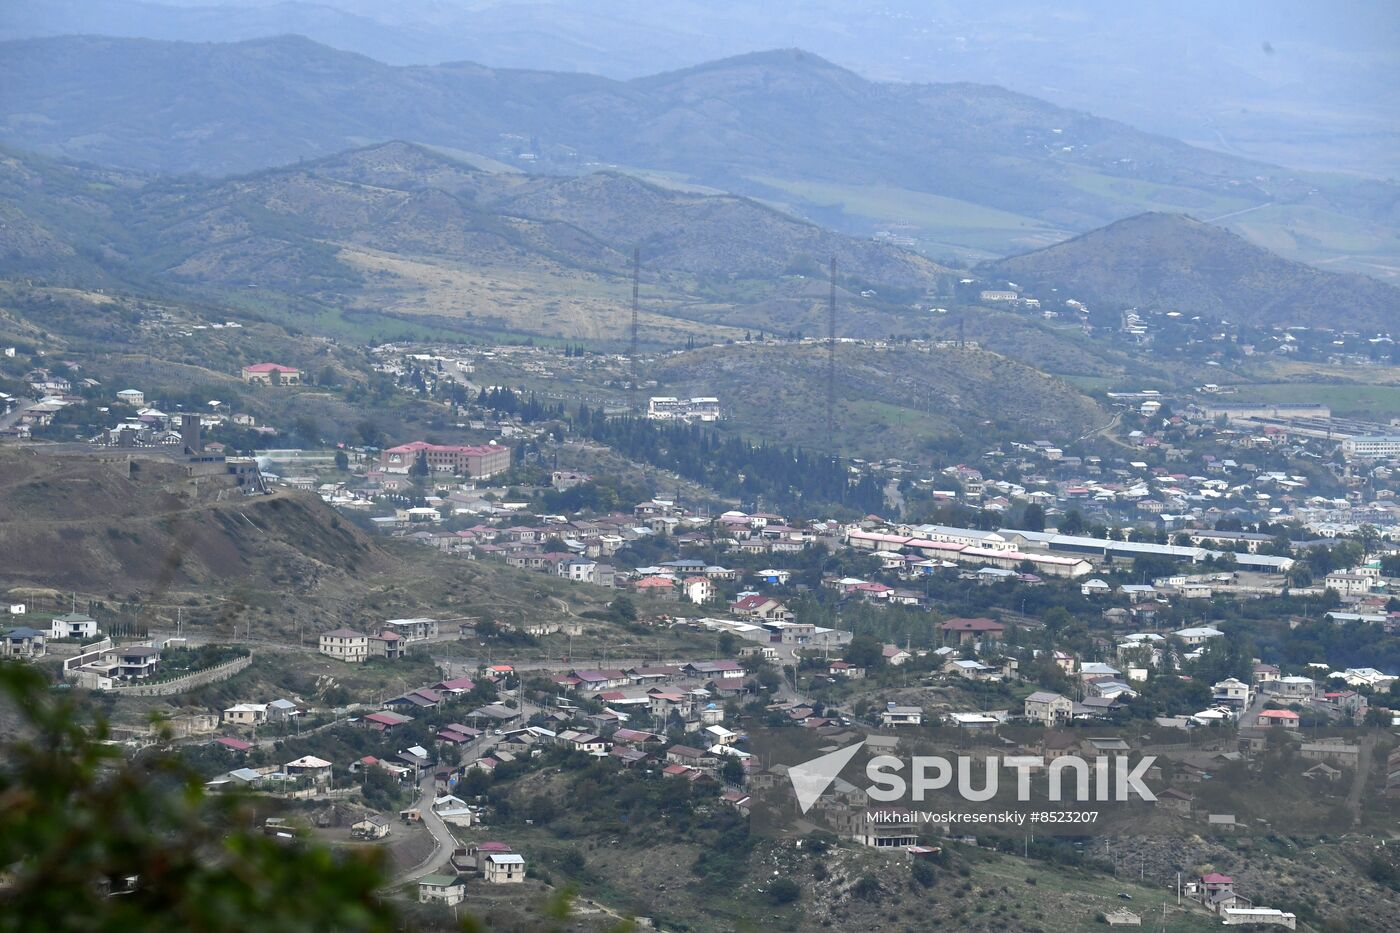 Azerbaijan Armenia Tensions